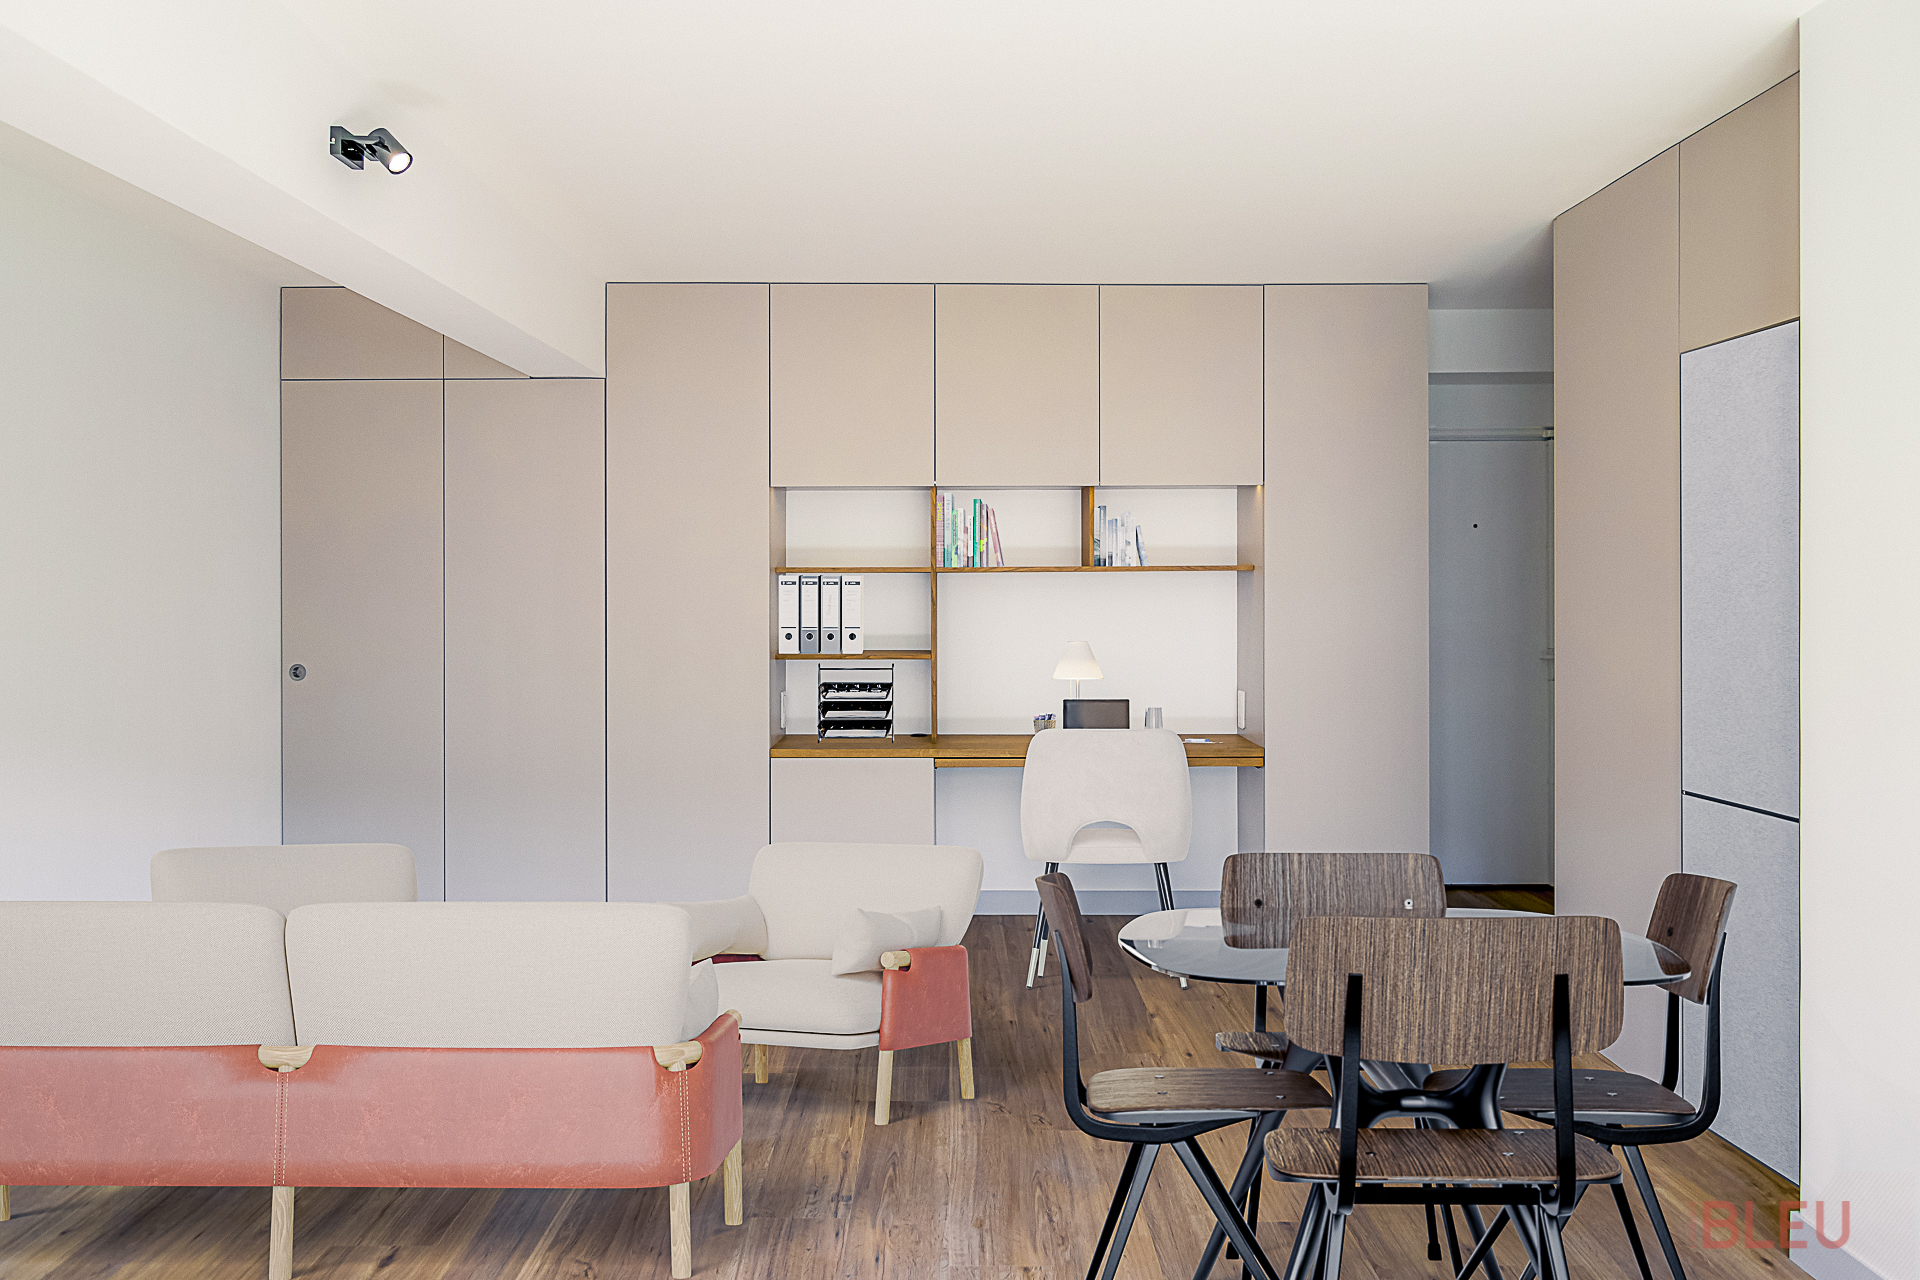 Espace de vie contemporain avec zone de travail intégré et mobilier moderne, conçu par un architecte intérieur à Paris spécialisé en rénovation